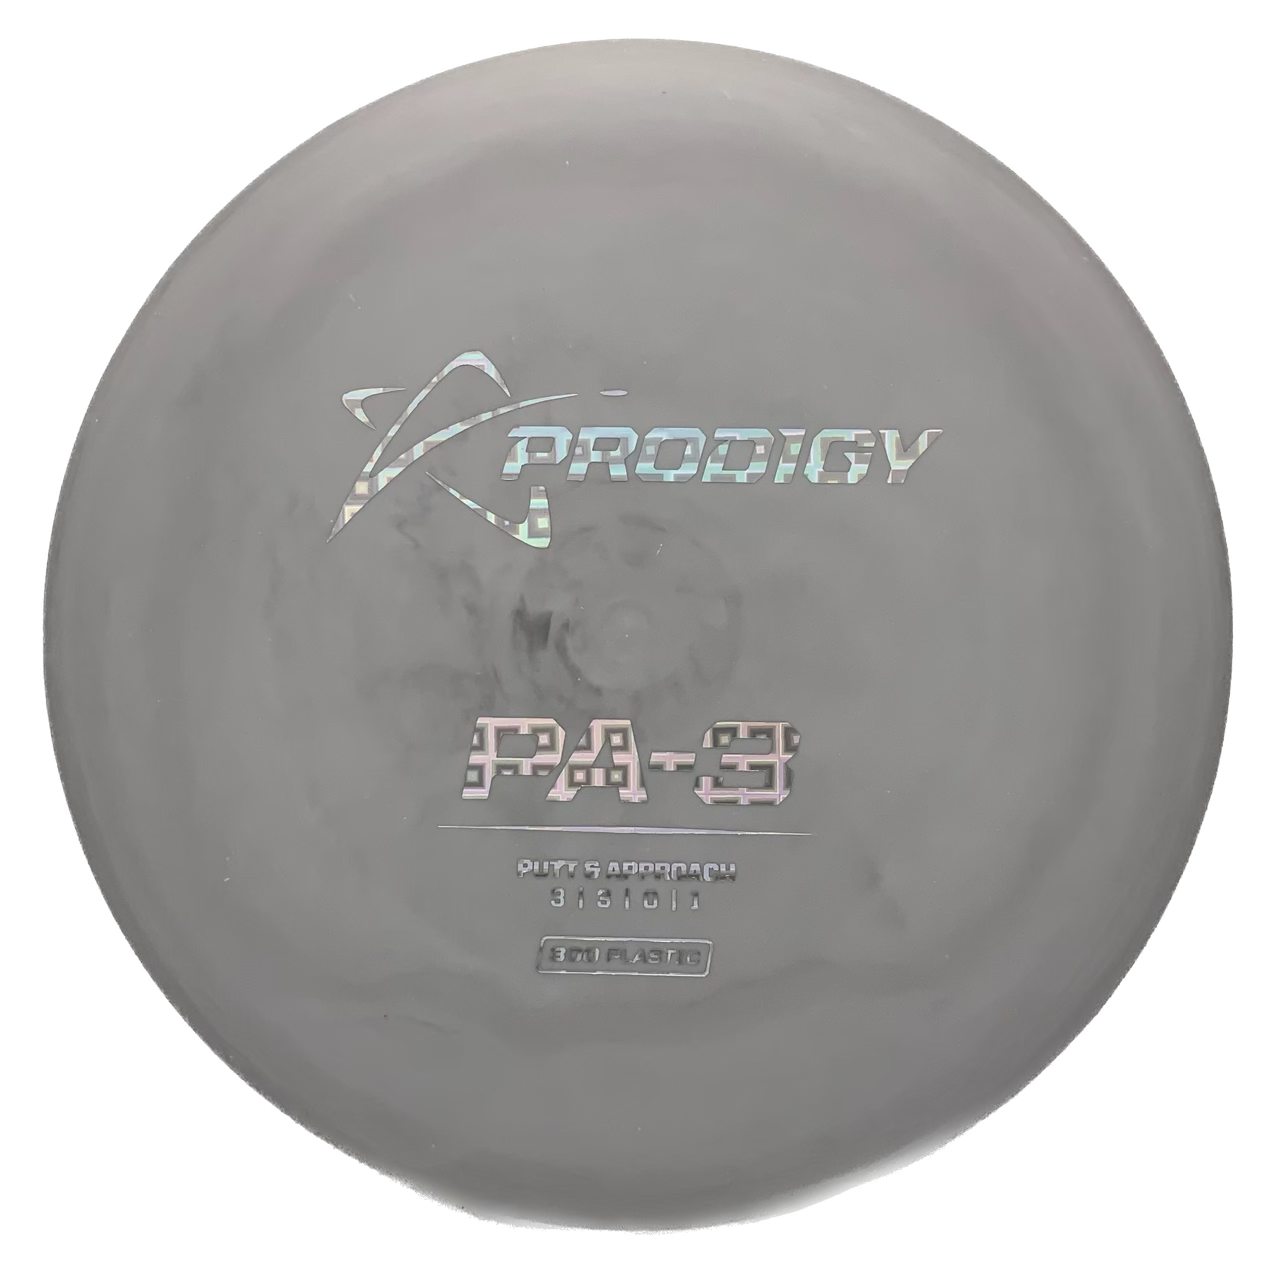 Prodigy PA-3 - Astro Discs TX - Houston Disc Golf